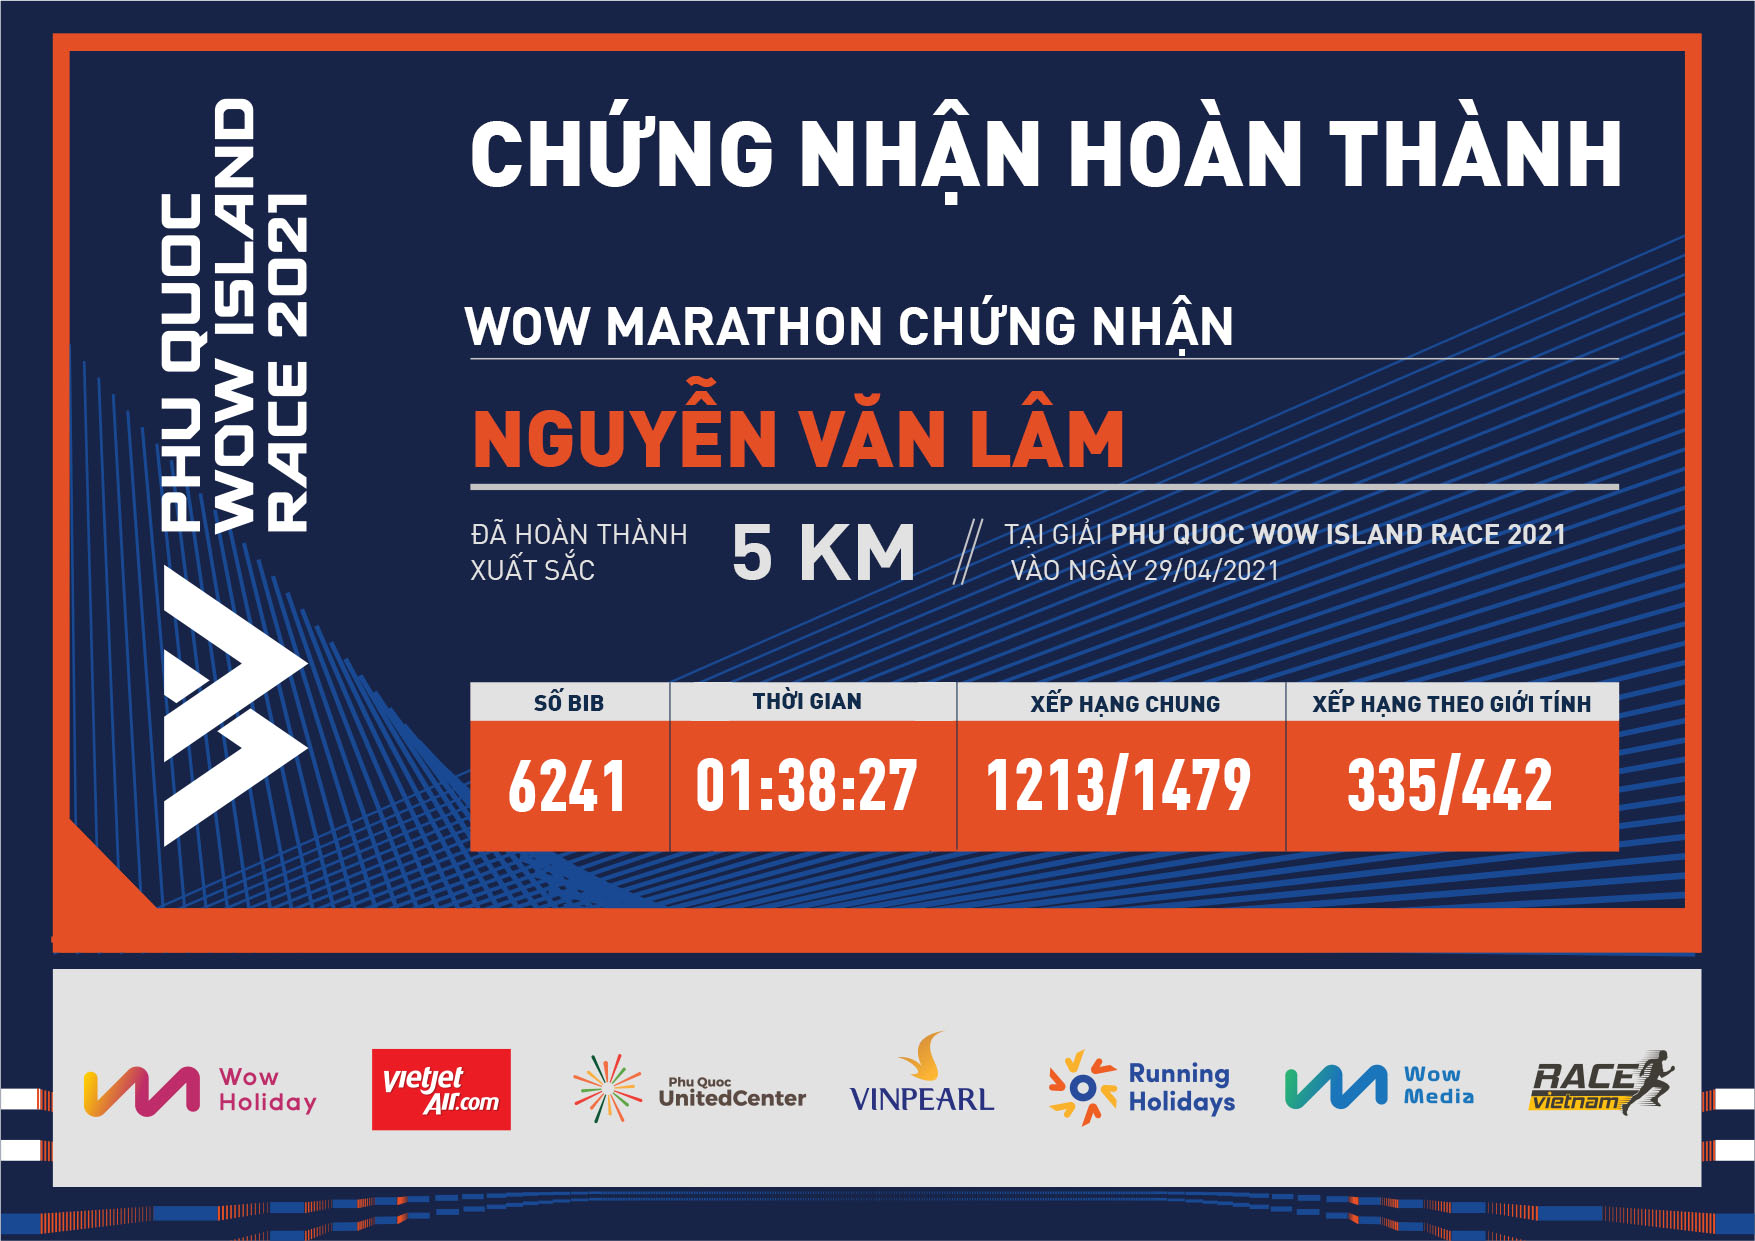 6241 - Nguyễn Văn Lâm